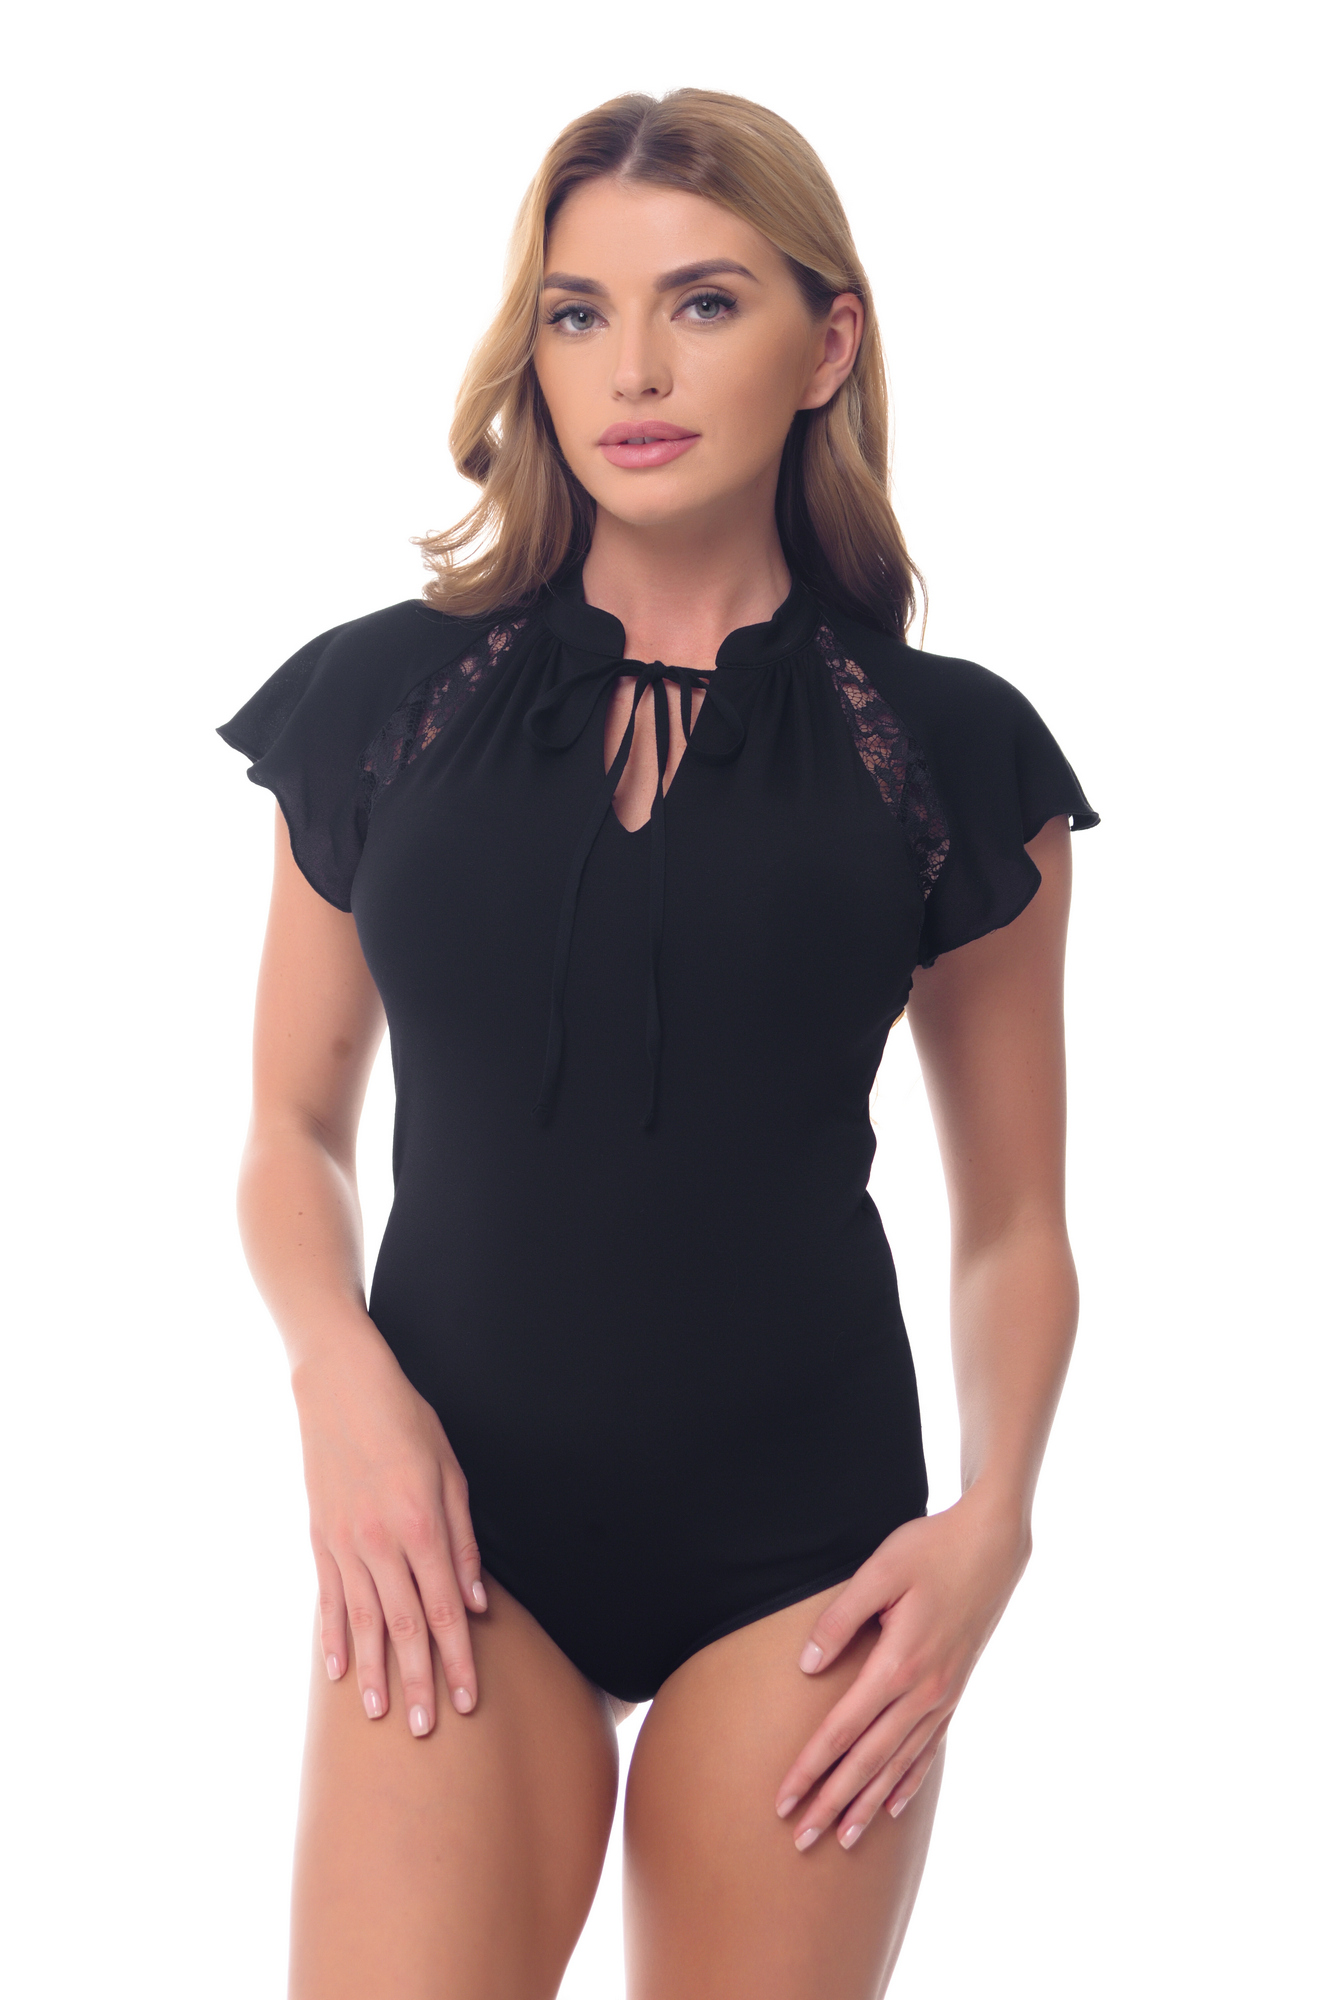 Buy Business Office Women Black blouse body Summer Short sleeve by Arefeva